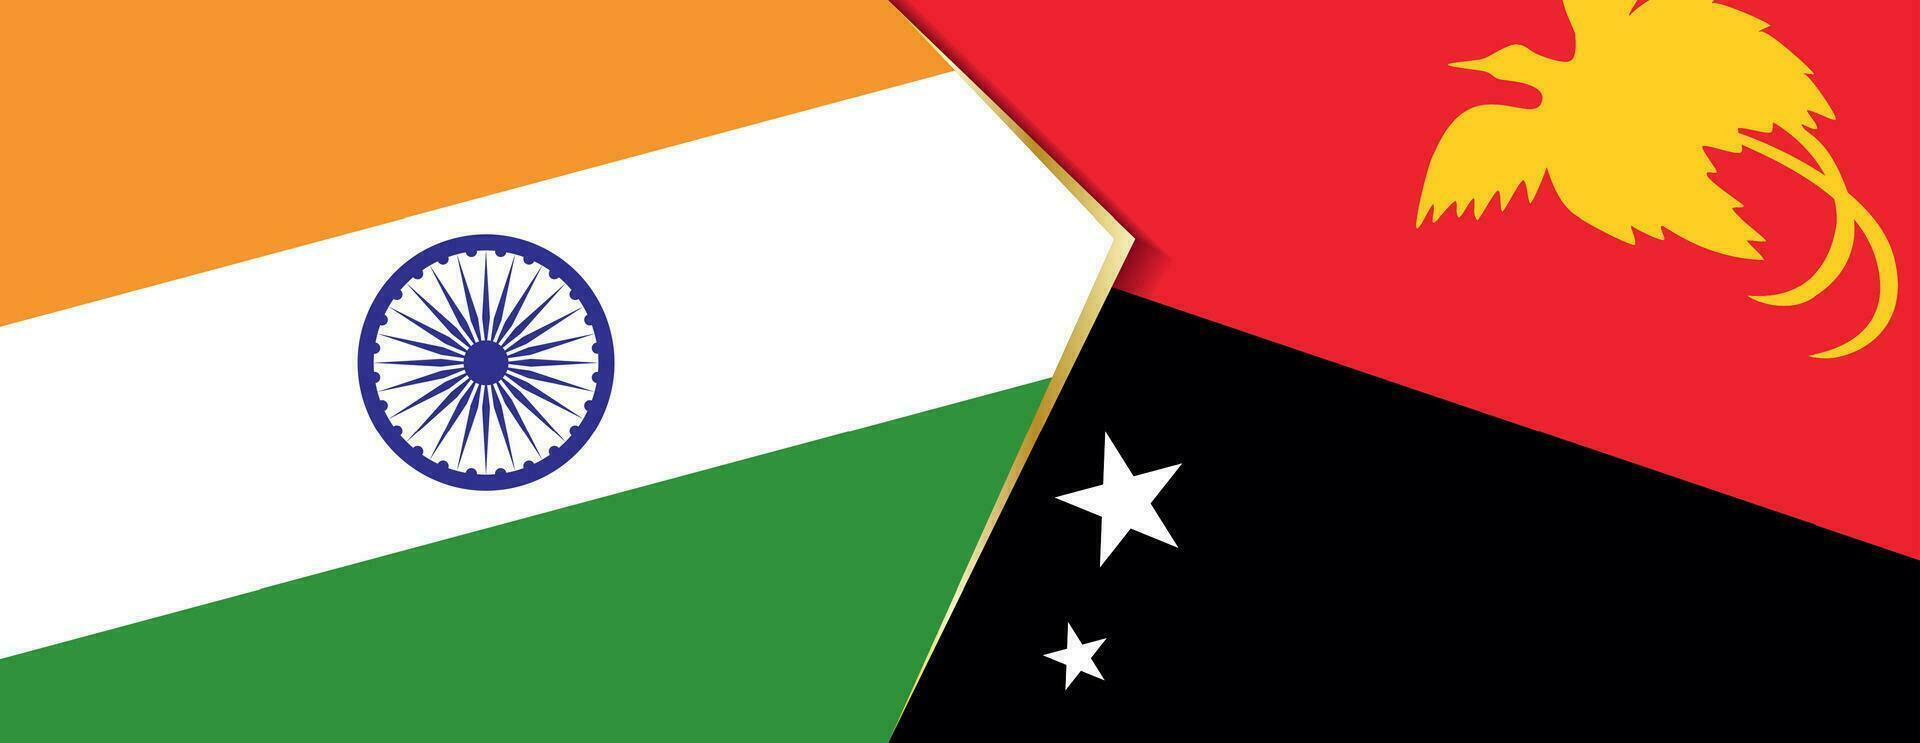 India e papua nuovo Guinea bandiere, Due vettore bandiere.